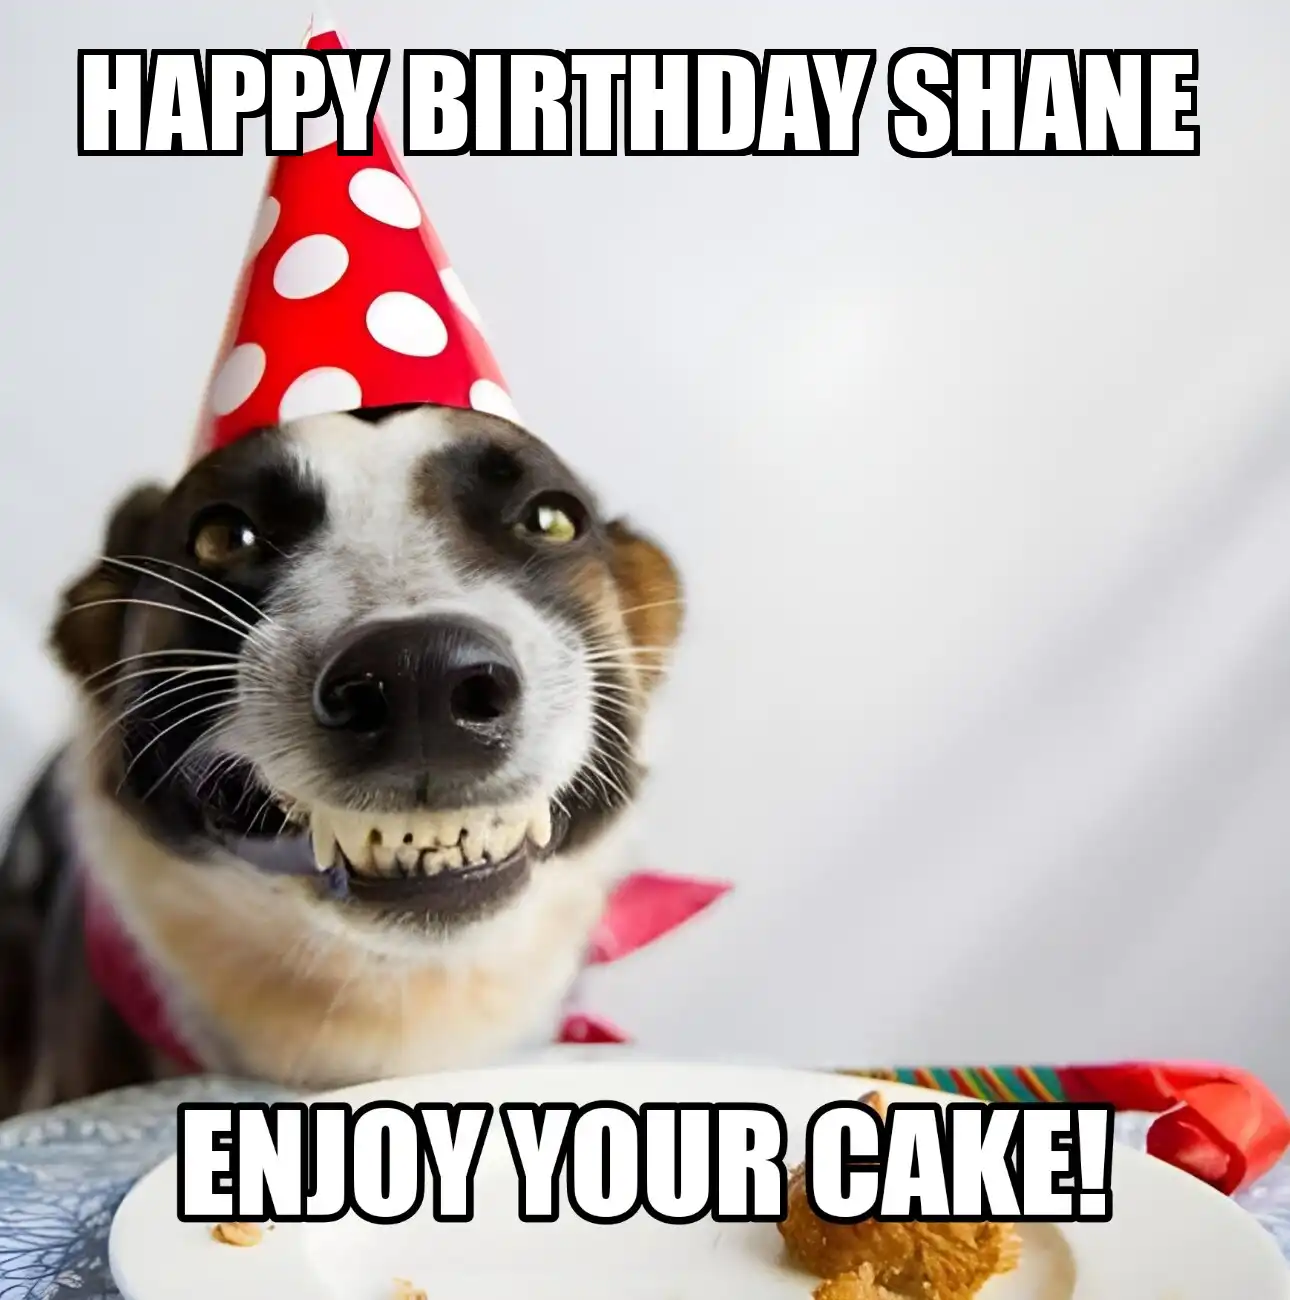 Happy Birthday Shane Enjoy Your Cake Dog Meme